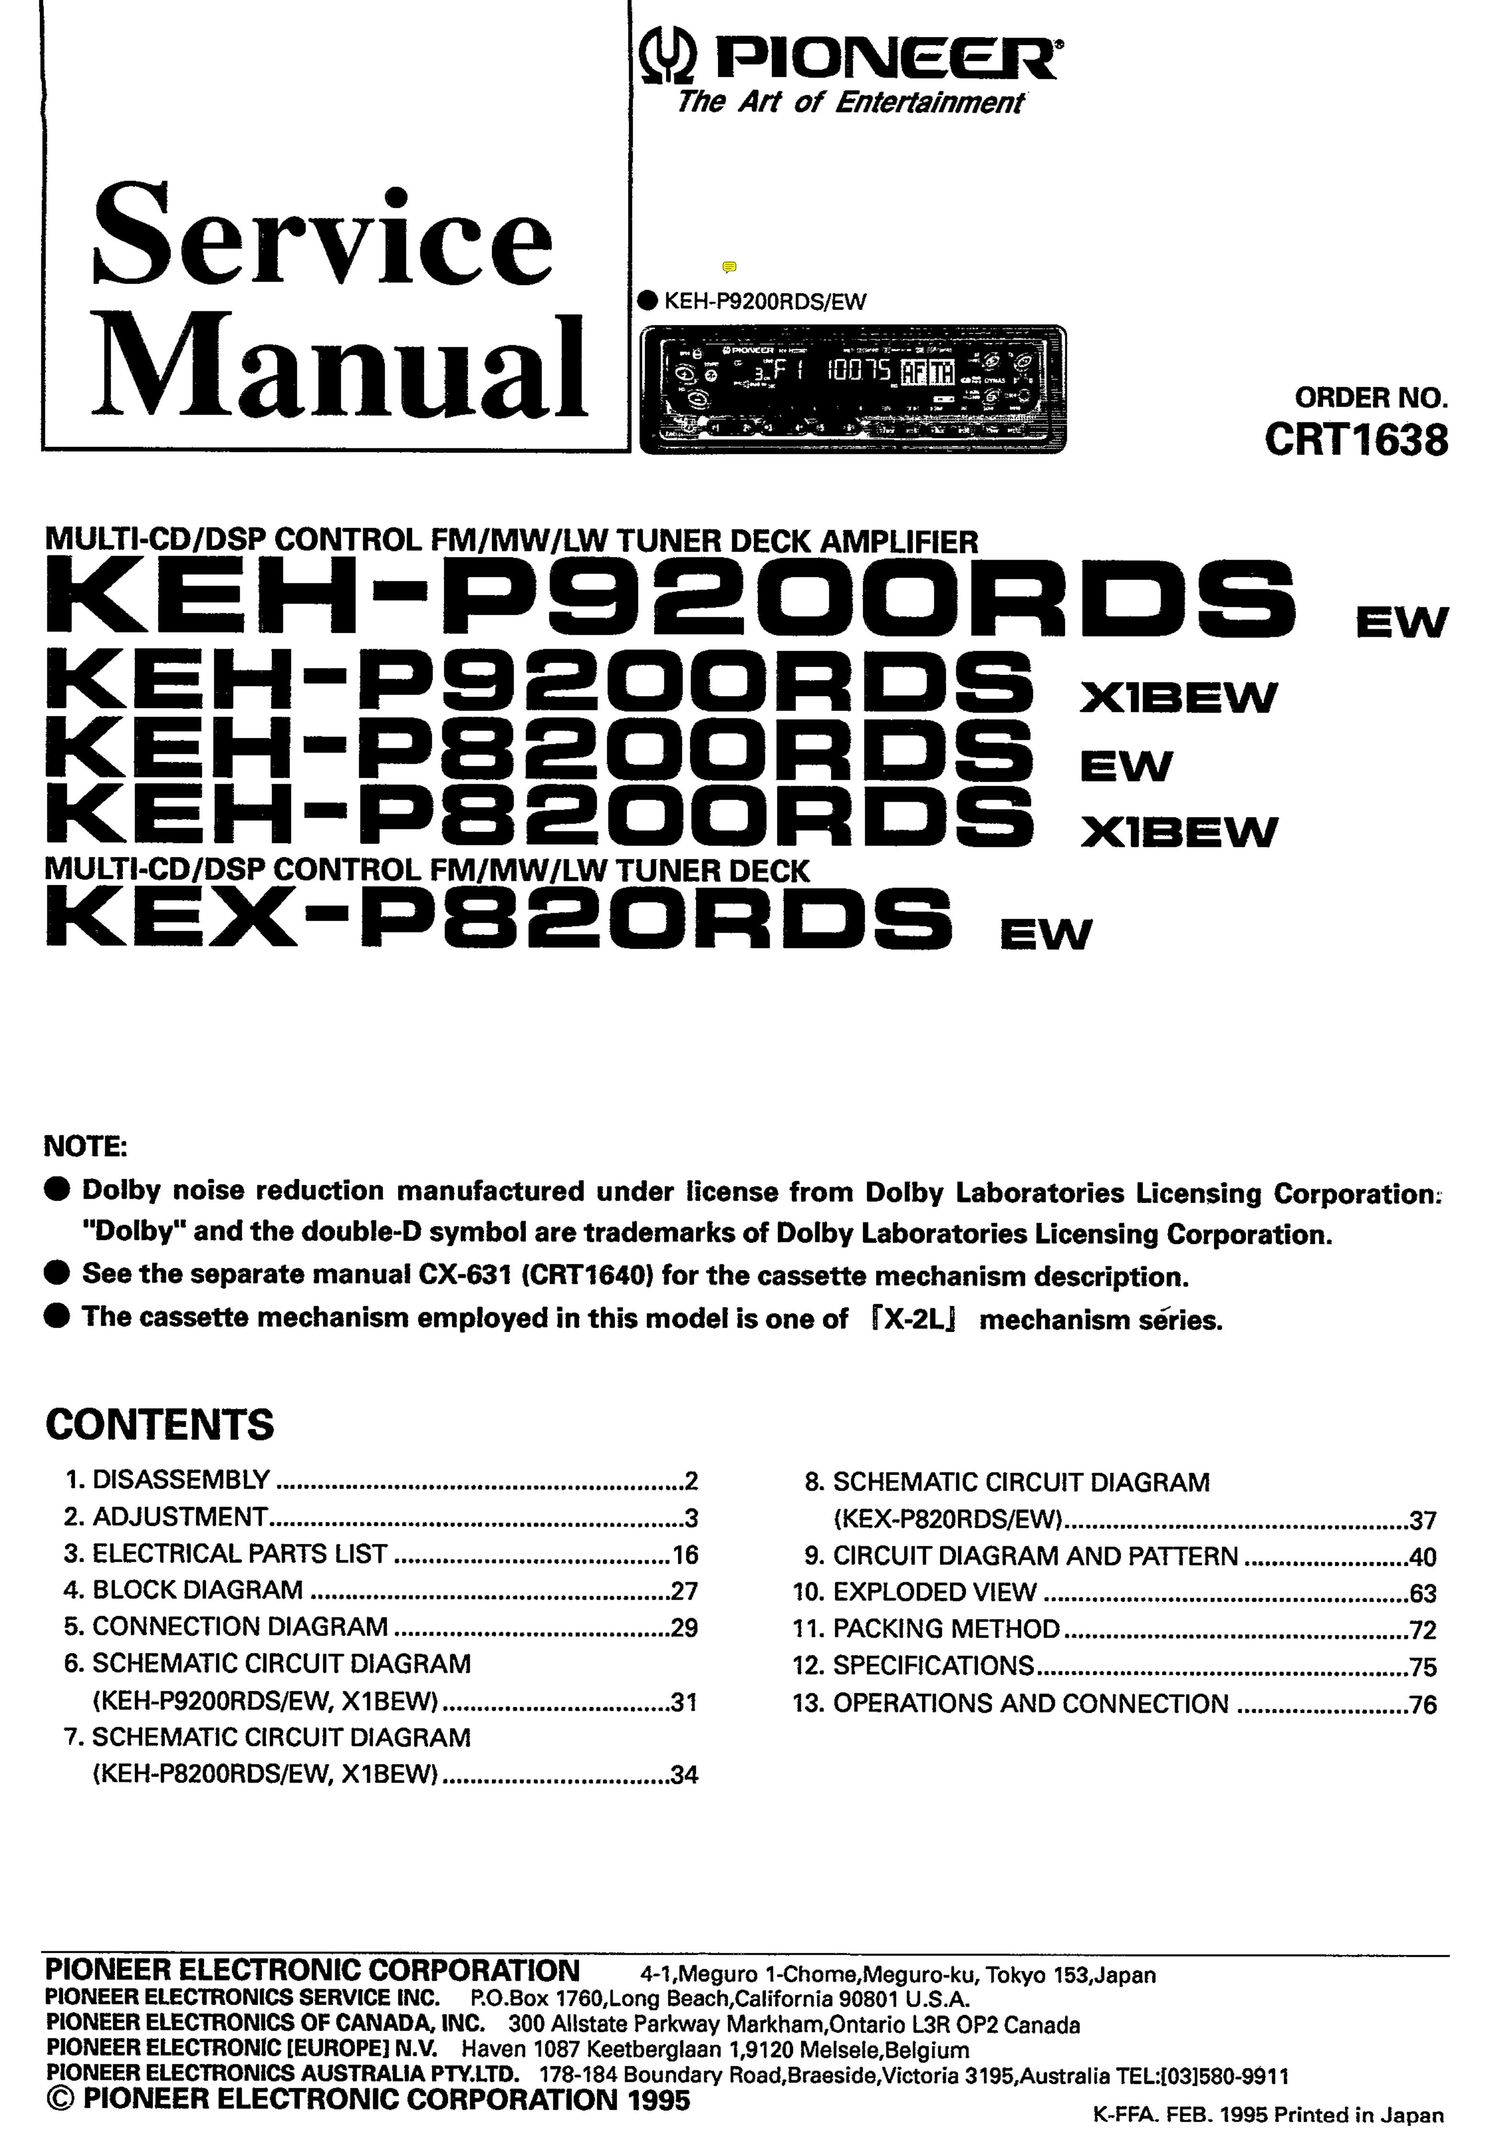 pioneer kehp 8200 rdsx 1 bew owners manual